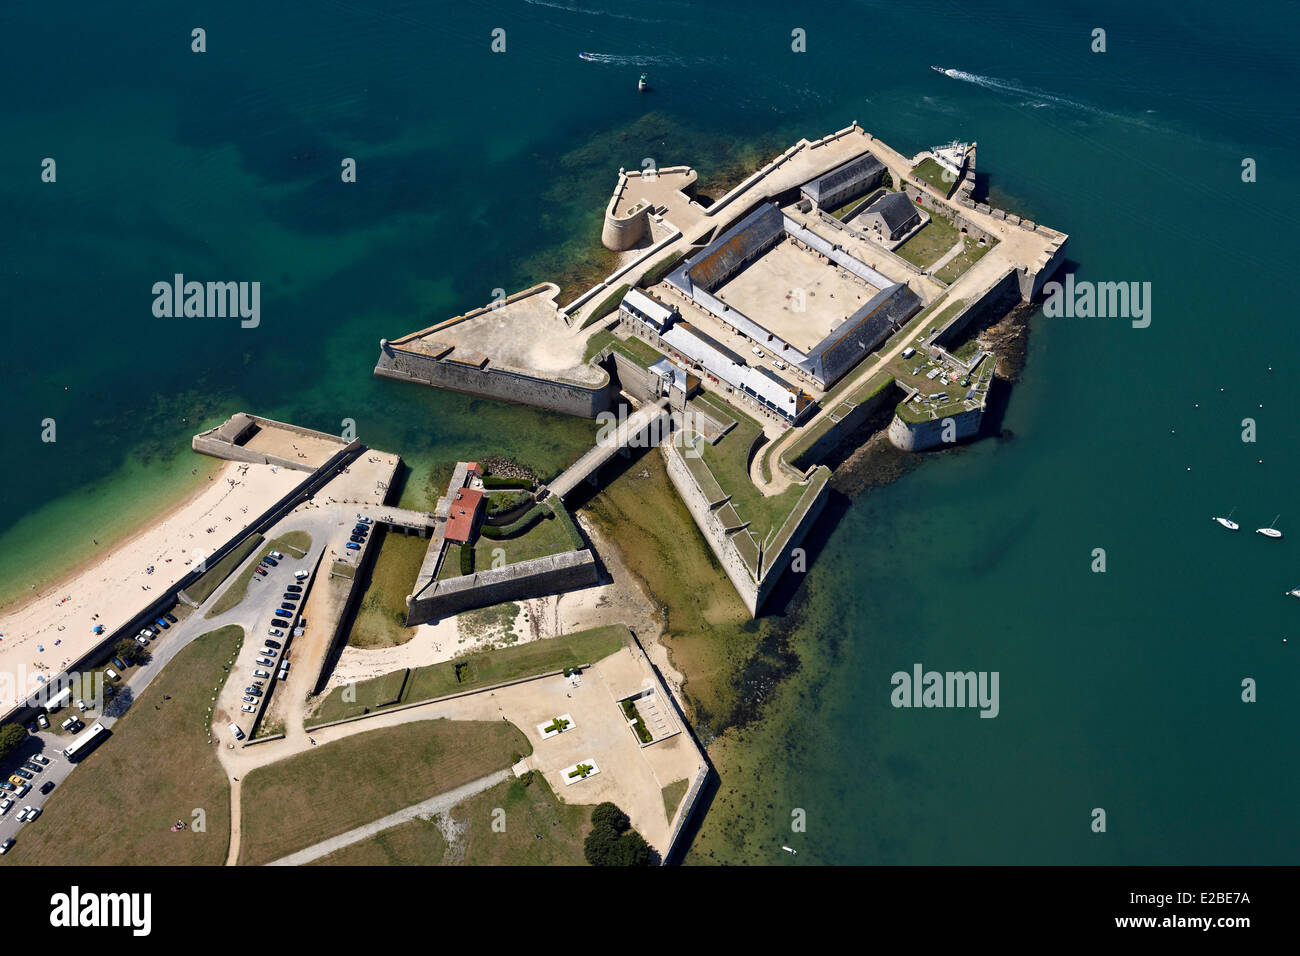 France, Morbihan, Port Louis, La Citadelle remanié par Vauban, à l'entrée du port de Lorient (vue aérienne) Banque D'Images